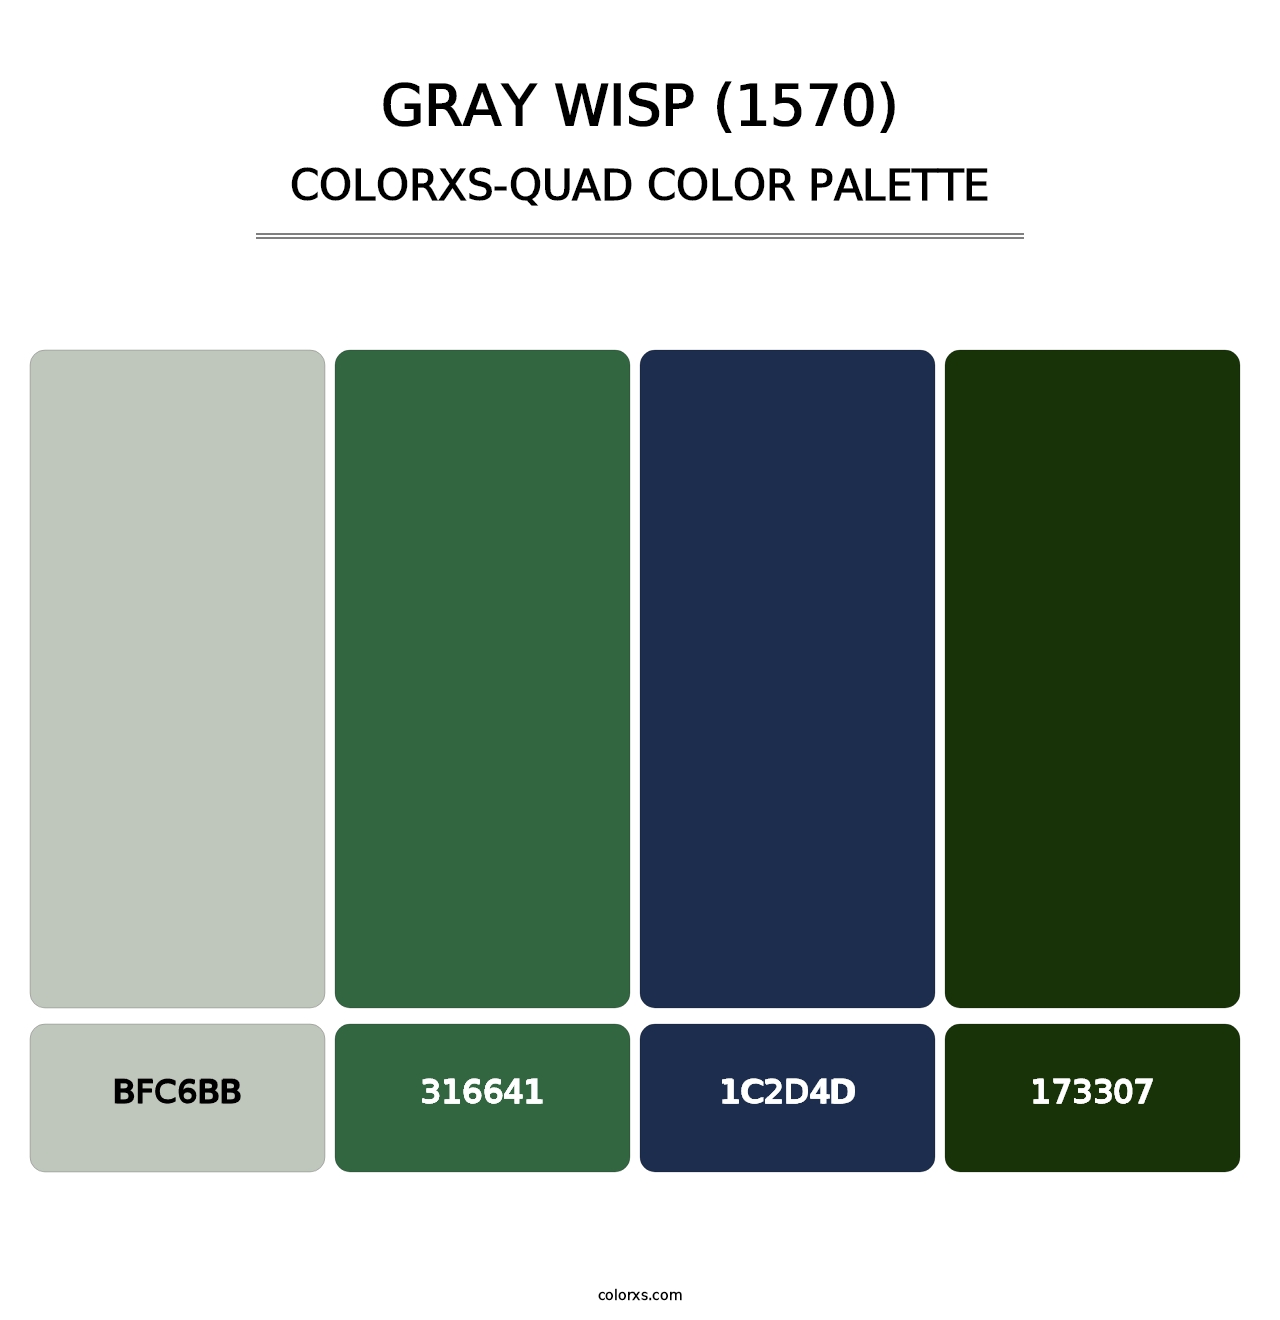 Gray Wisp (1570) - Colorxs Quad Palette